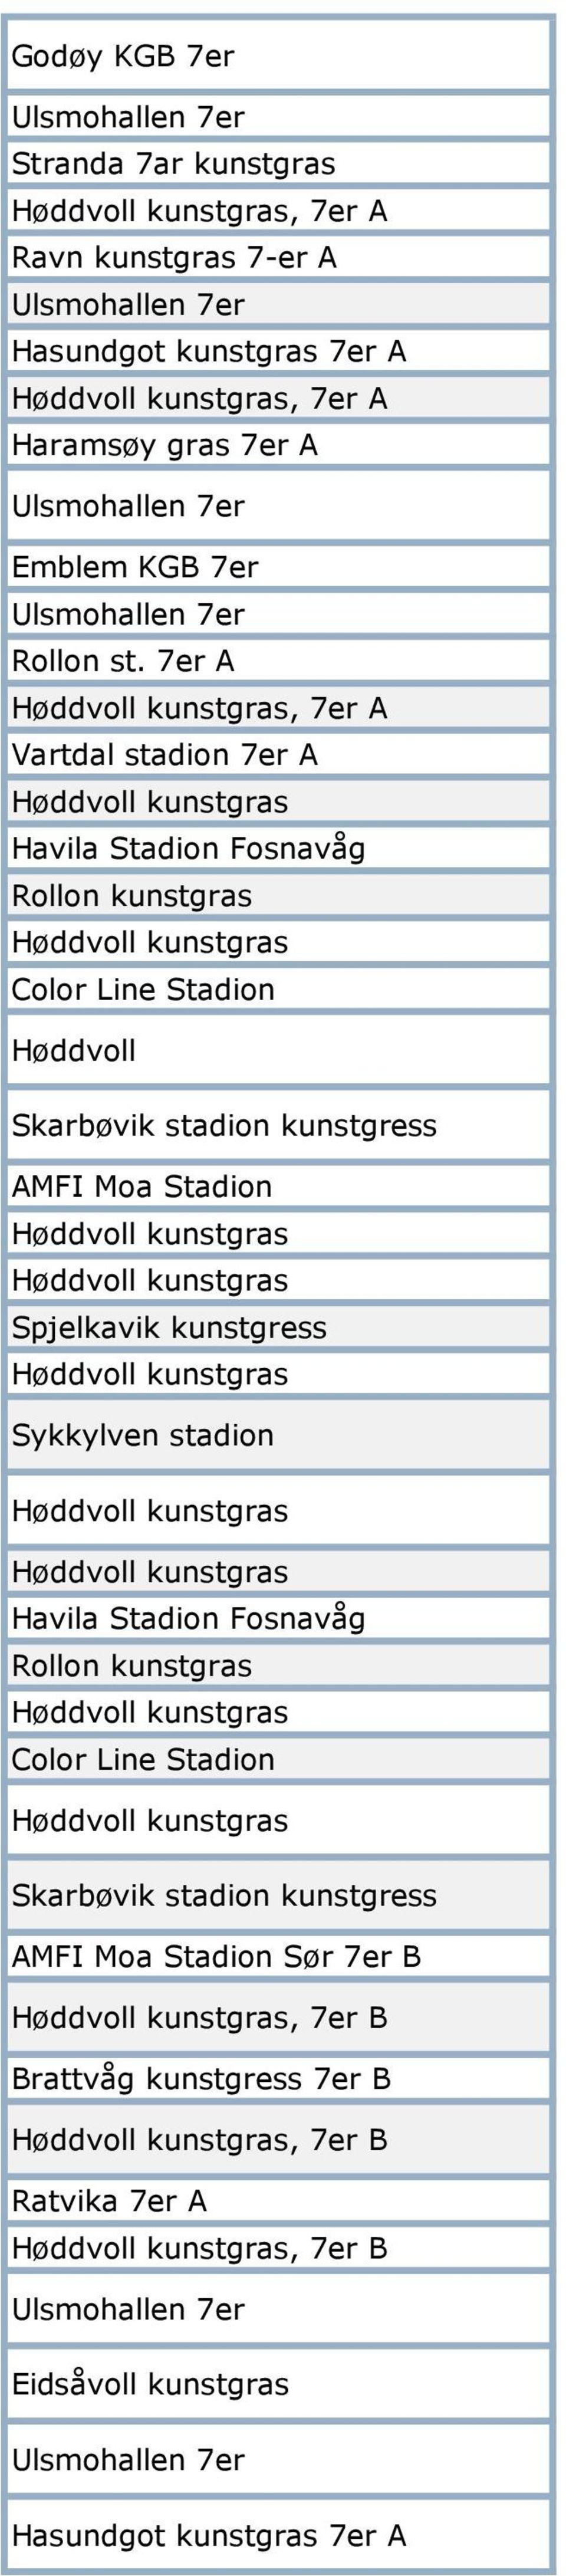 7er A, 7er A Vartdal stadion 7er A Havila Stadion Fosnavåg Rollon kunstgras Color Line Stadion Skarbøvik stadion kunstgress AMFI Moa